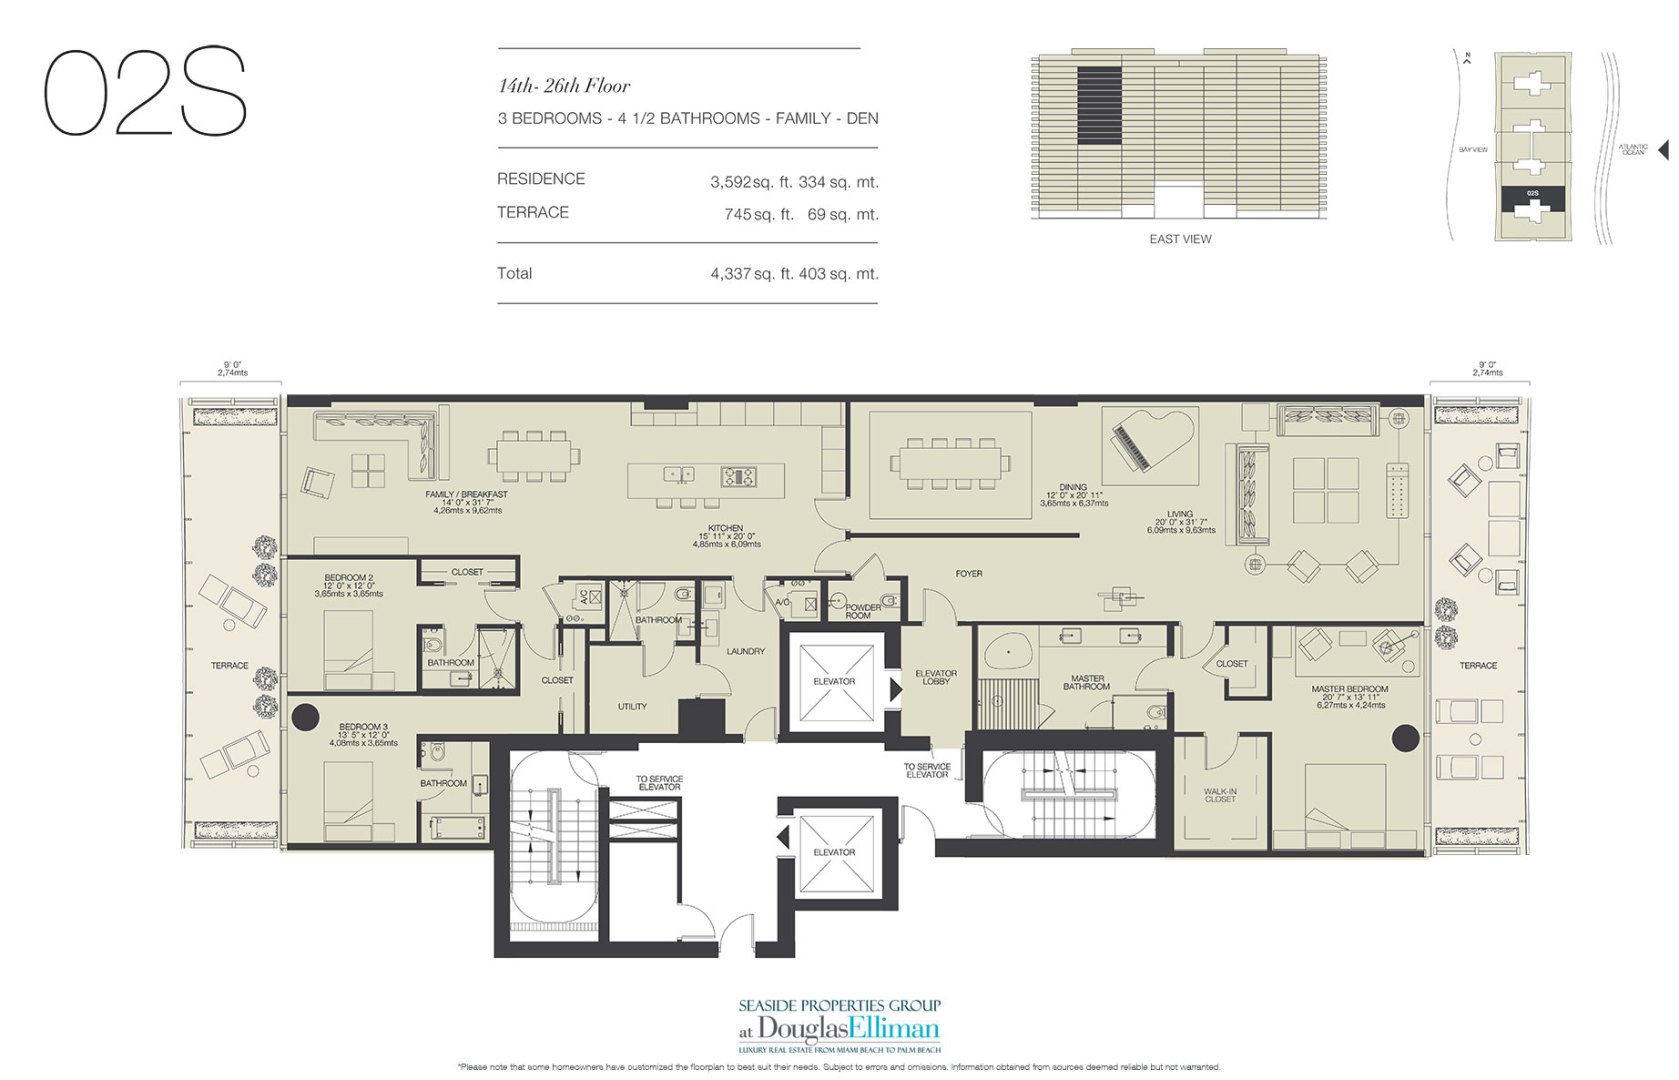 The 02S Floorplan for Oceana Bal Harbour, Luxury Oceanfront Condos in Bal Harbour, Florida 33154